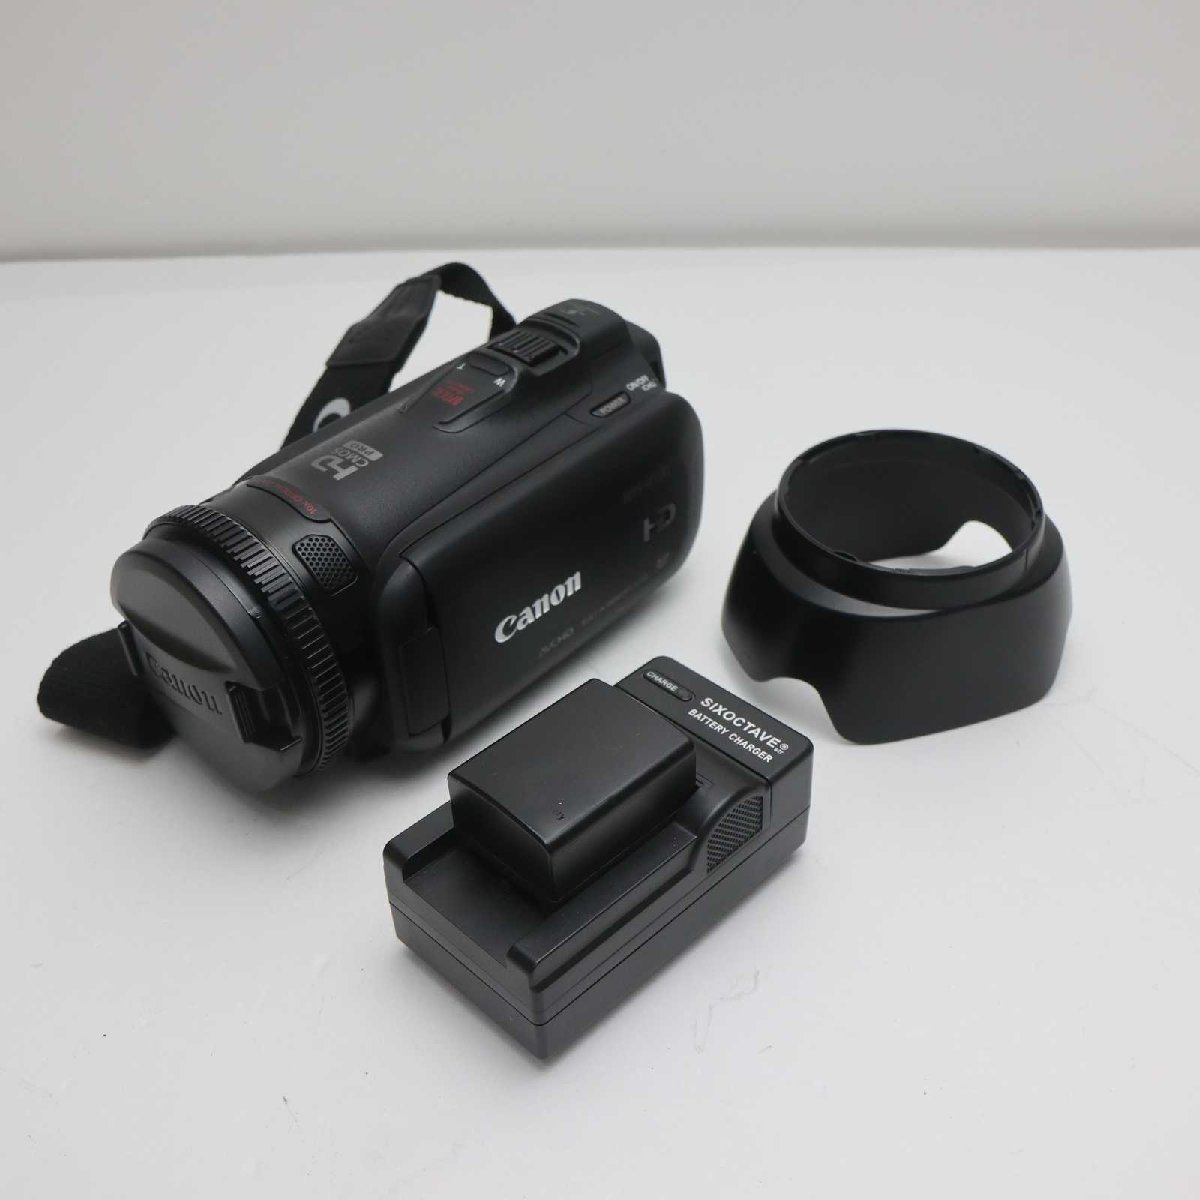 超美品 iVIS HF G10 ブラック 即日発送 Canon デジタルビデオカメラ 本体 あすつく 土日祝発送OK